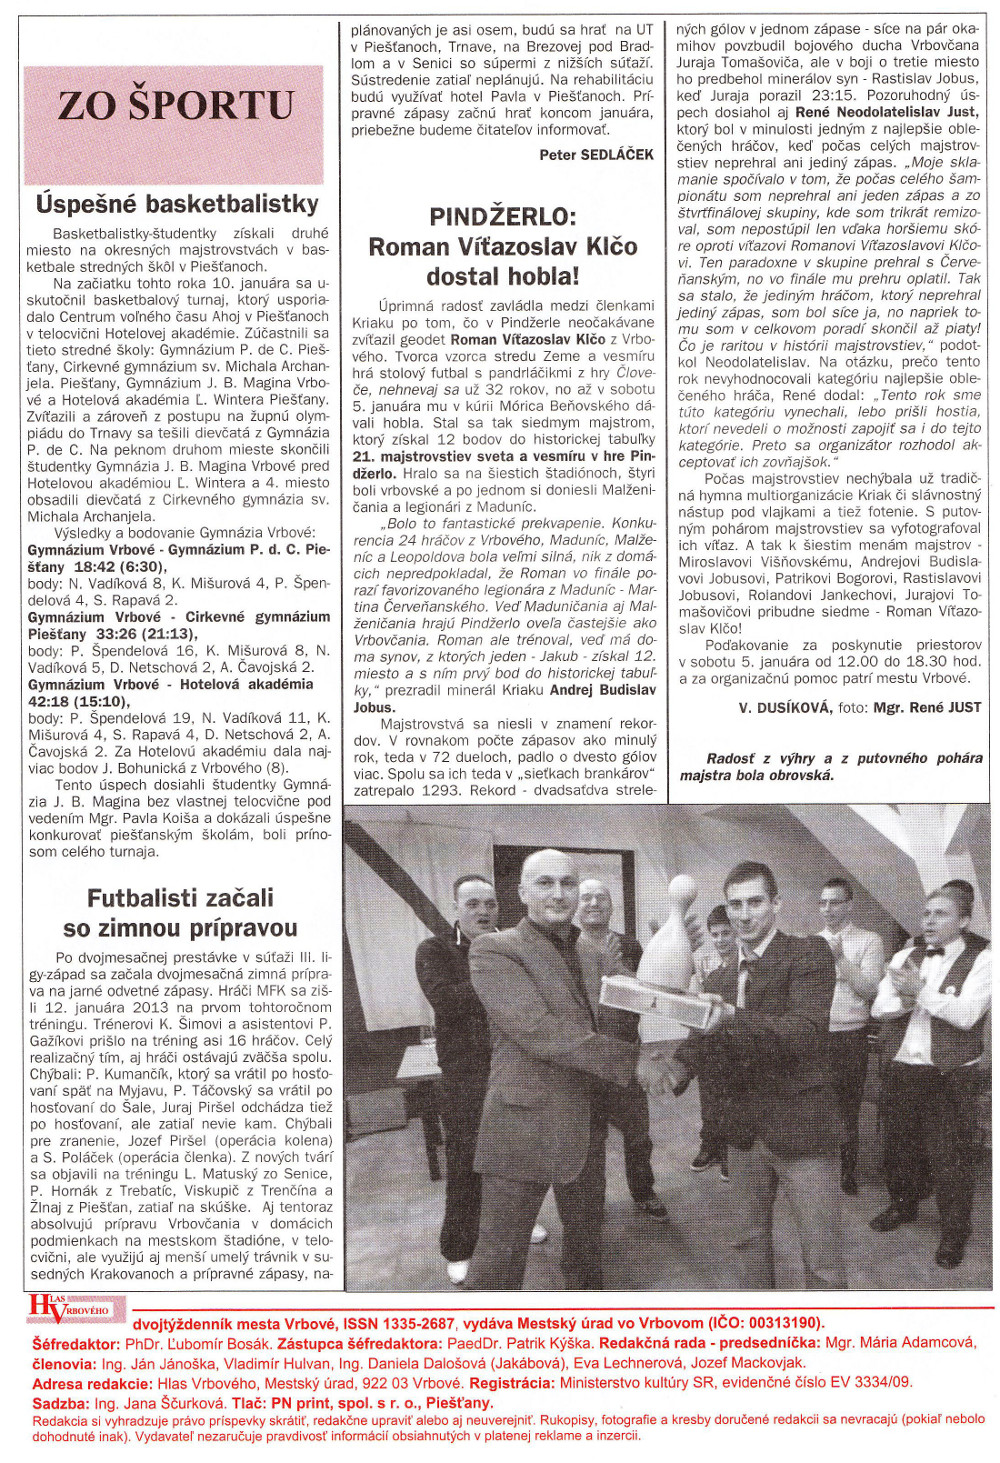 Hlas Vrbového 02/2013, strana 8